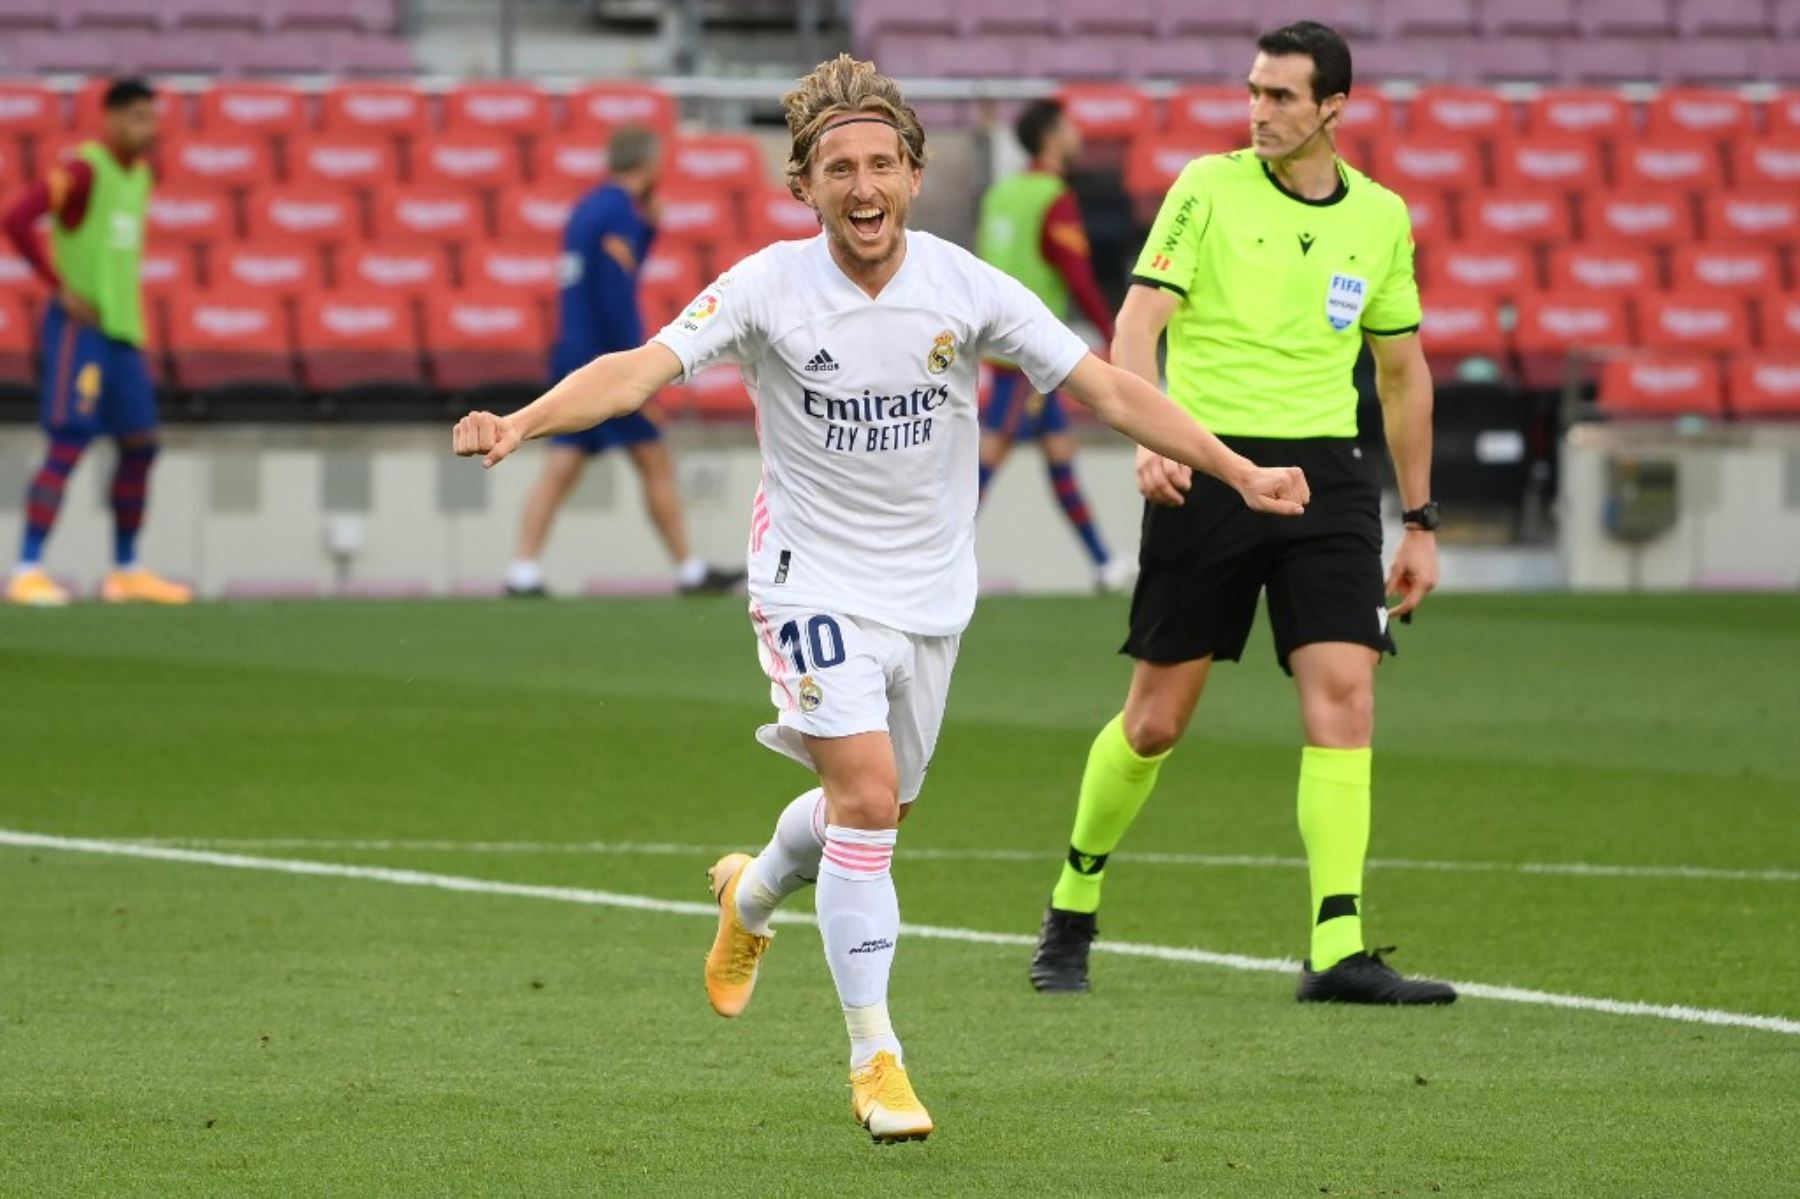 El centrocampista croata del Real Madrid Luka Modric celebra tras marcar un gol durante el partido de fútbol de la Liga española entre Barcelona y Real Madrid                     Foto: AFP